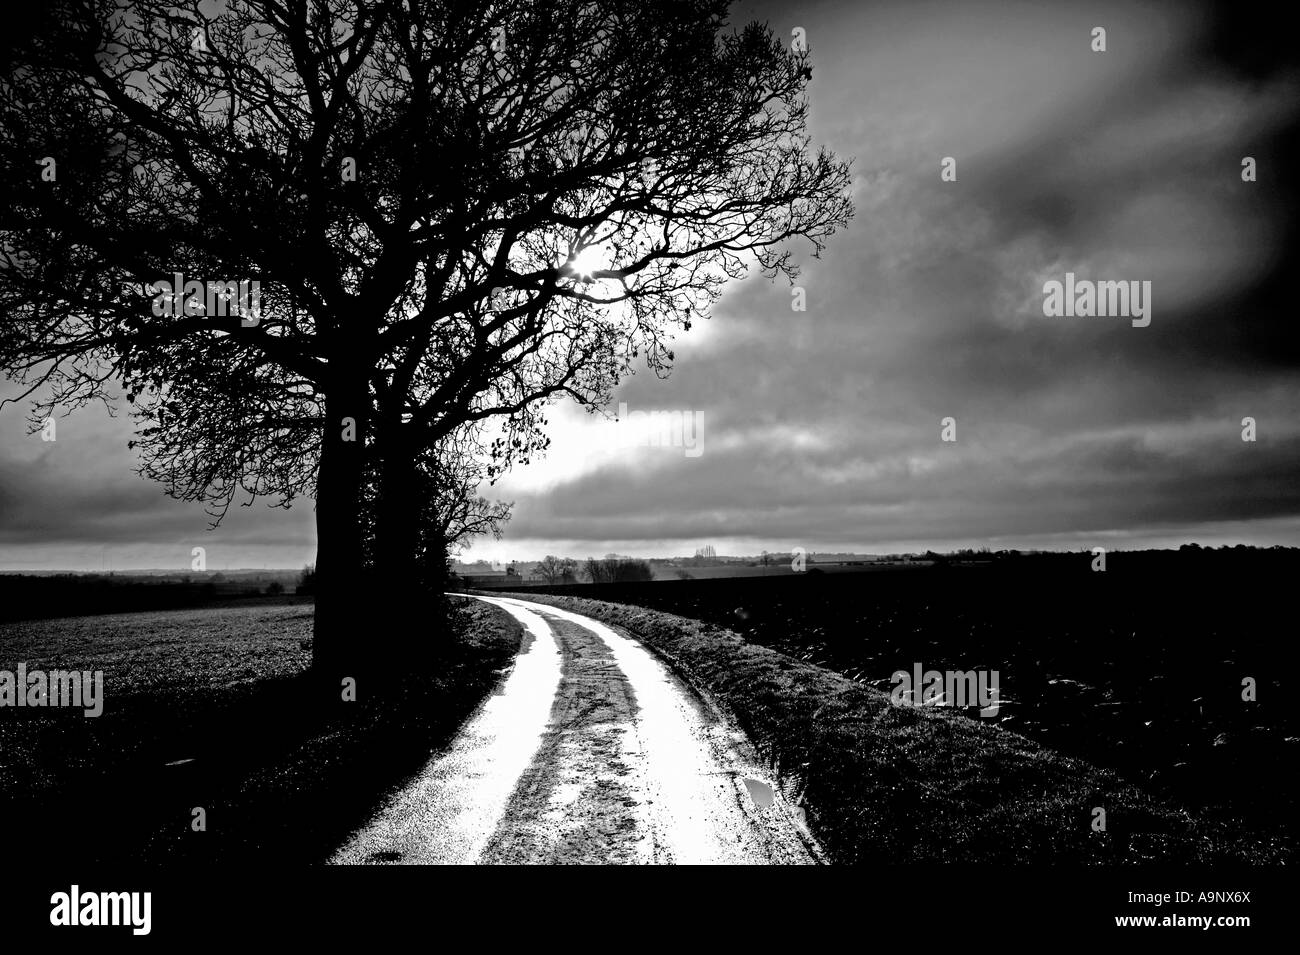 Immagine in bianco e nero di quercia a lato del vicolo del paese contro un drammatico inverno cielo molto nuvoloso Foto Stock